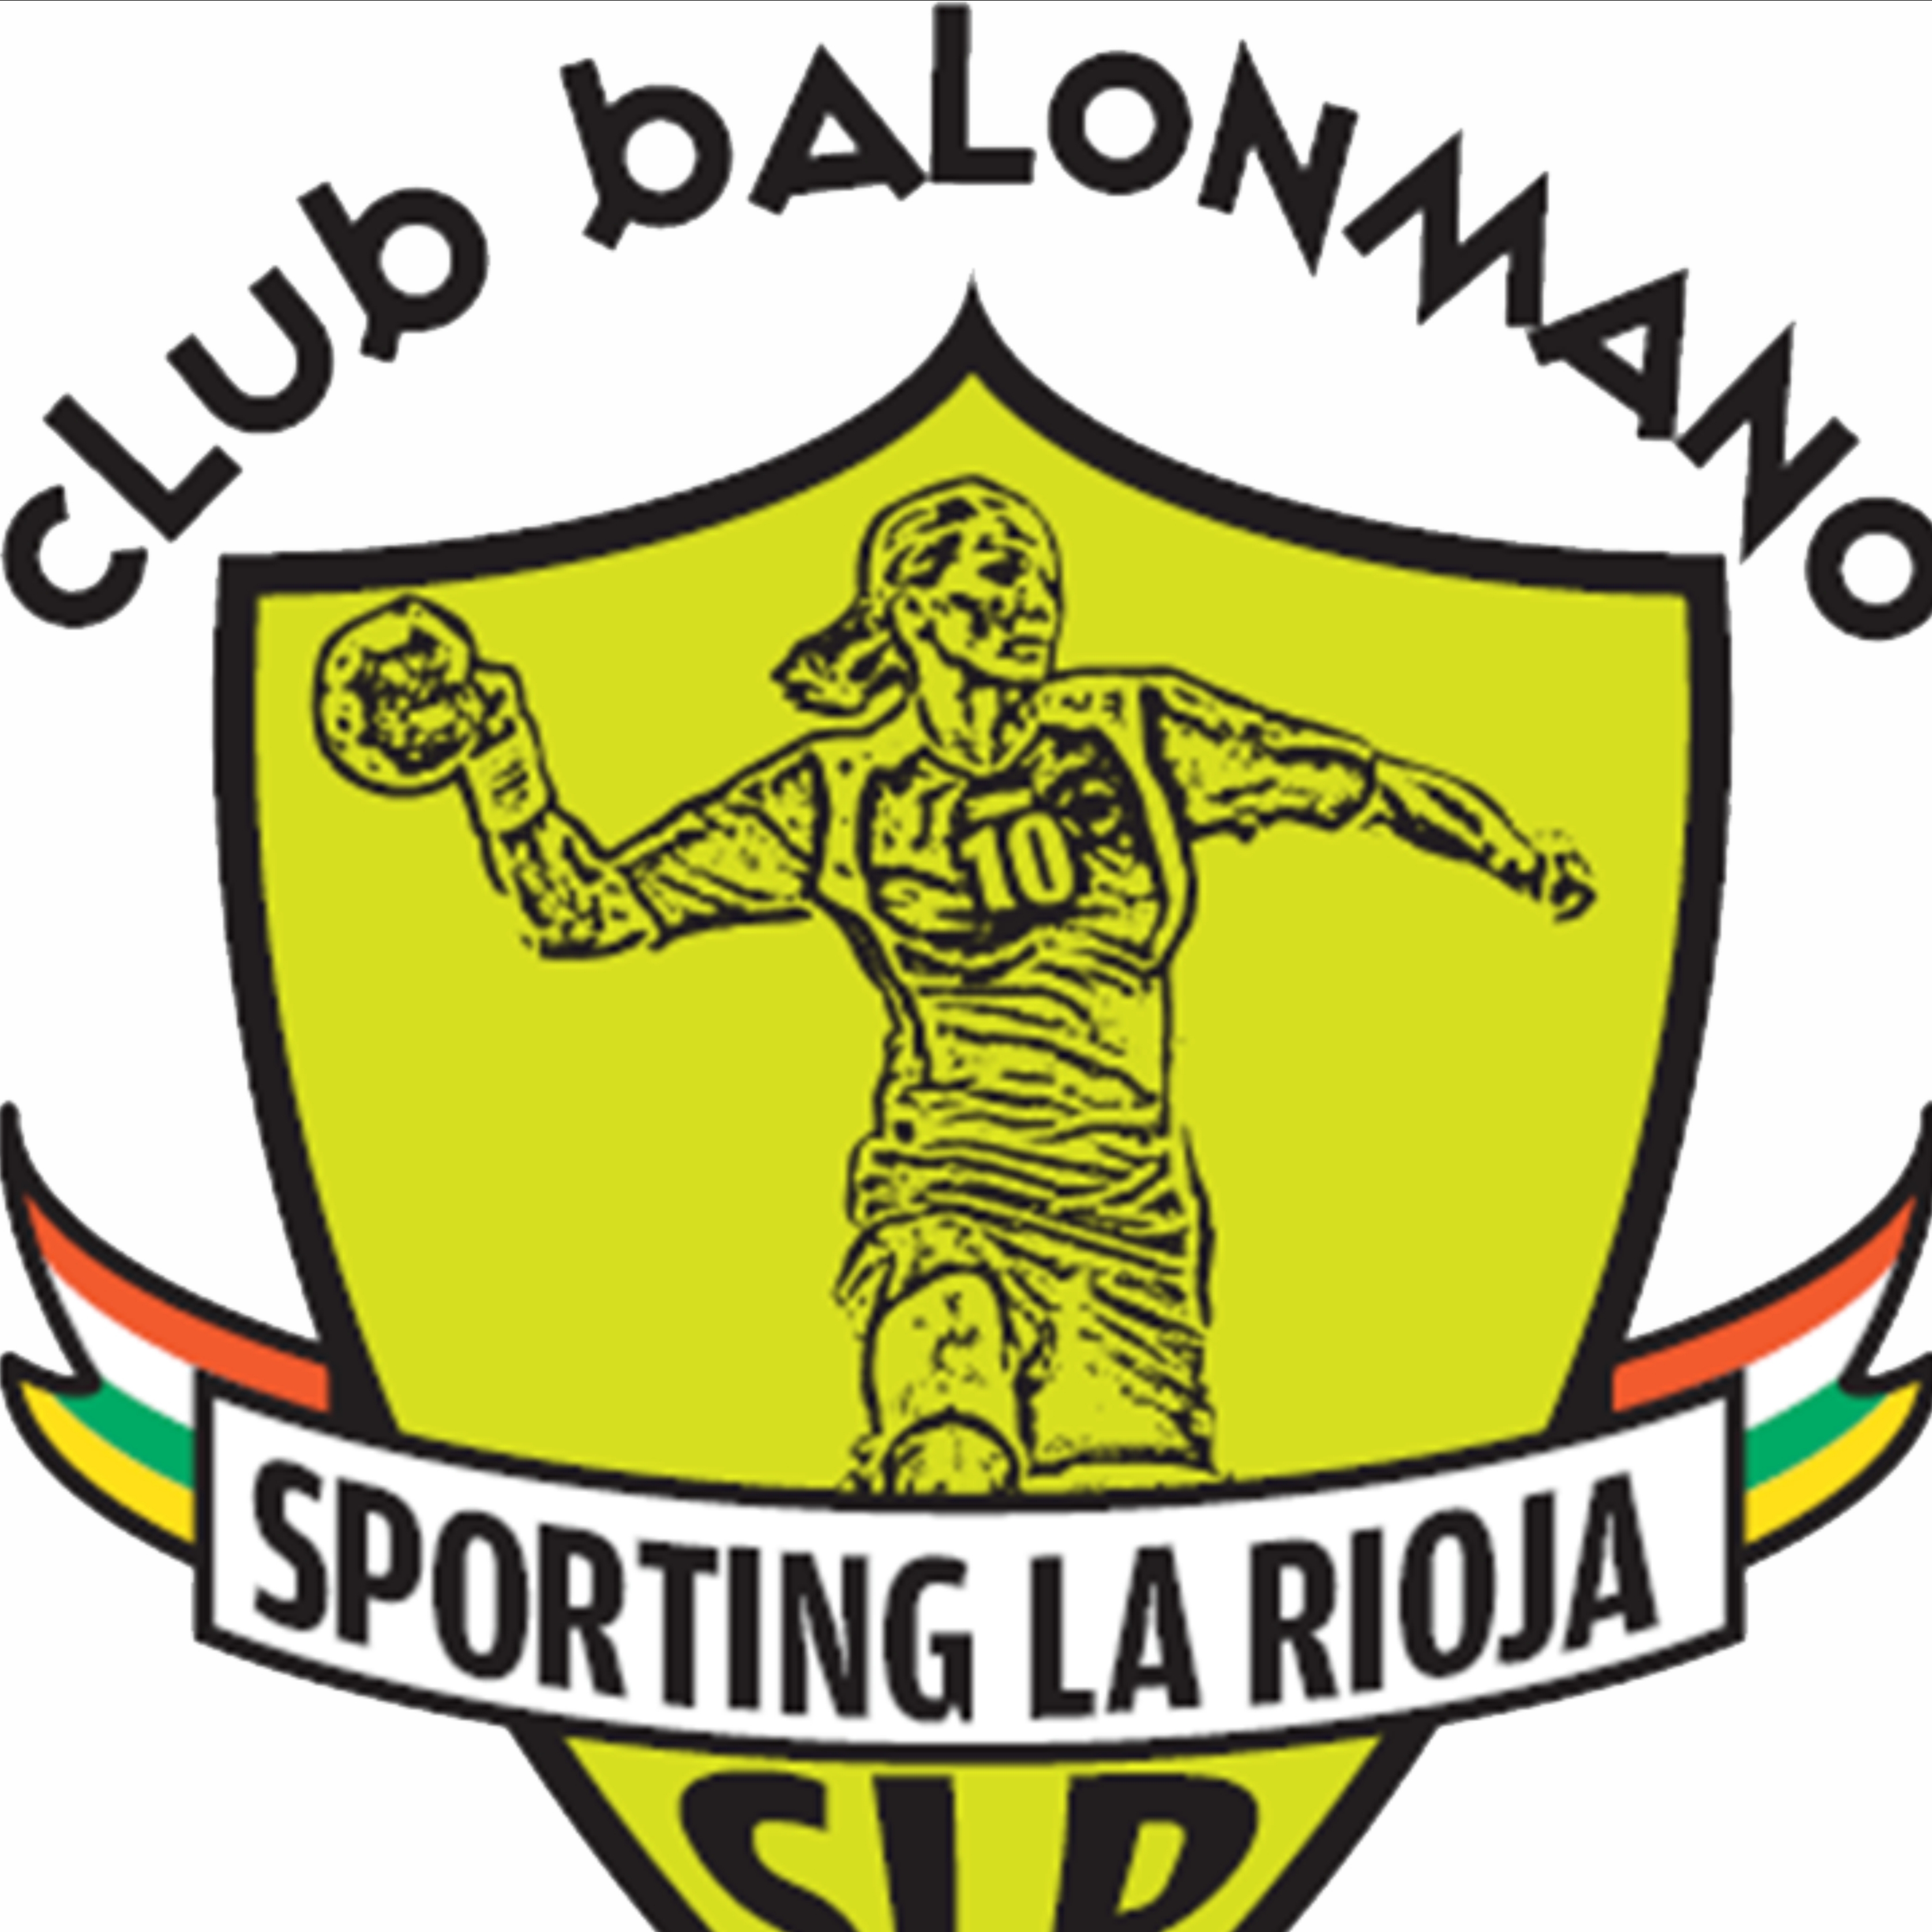 CLUB BALONMANO SPORTING LA RIOJA